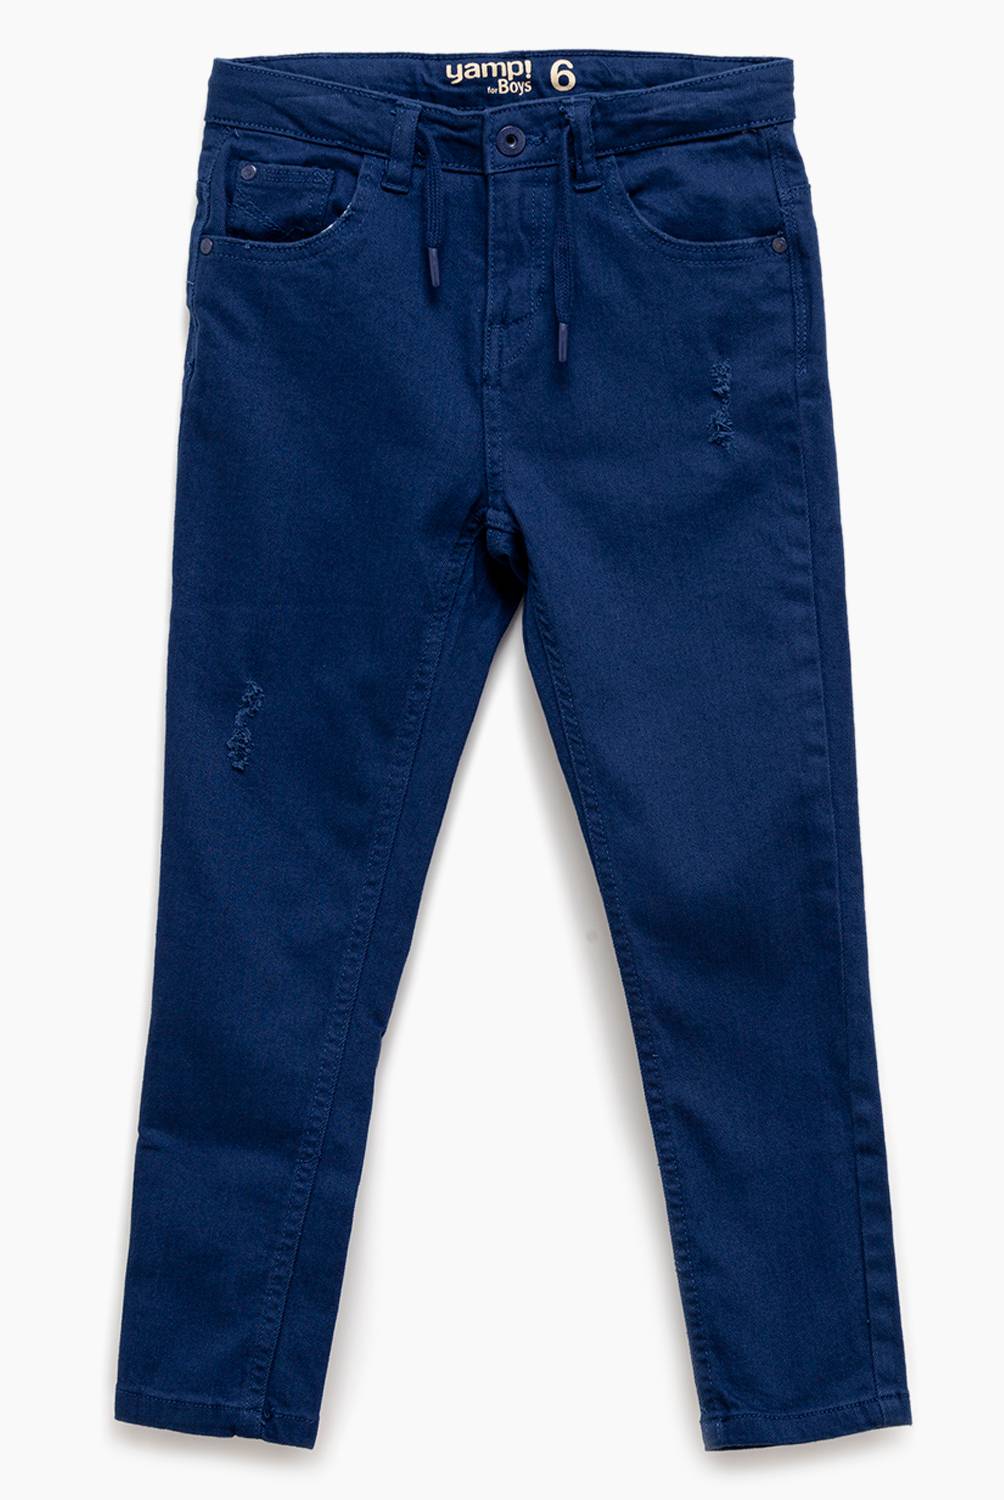 Yamp - Jeans Niño de Algodón